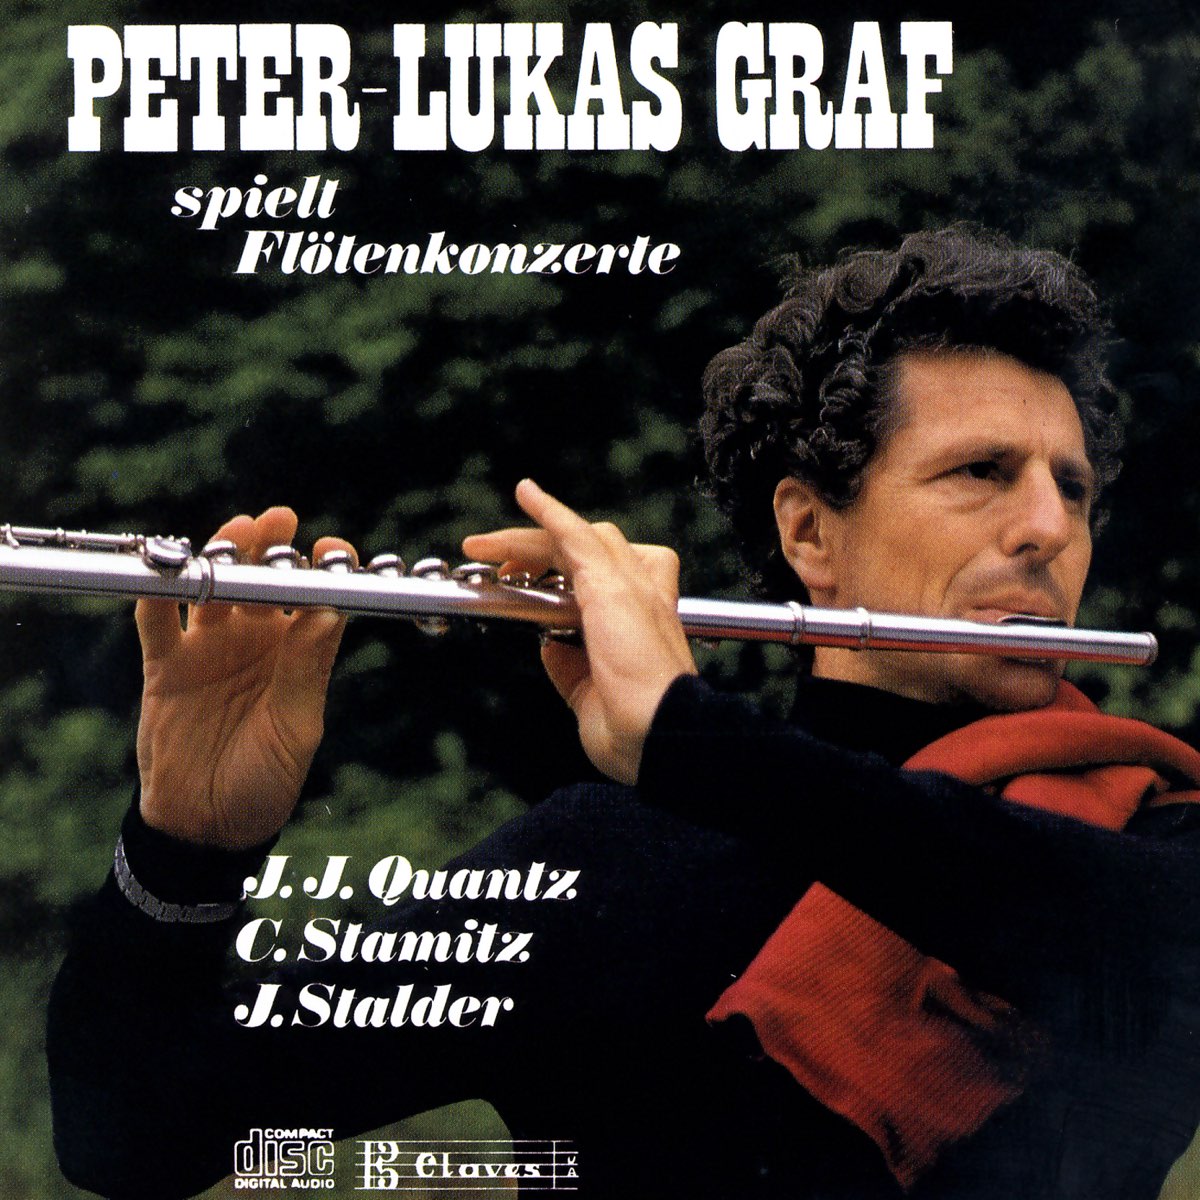 Peter Lukas. Штальдер. Peter-Lukas Graf & Manfred Sax & Jörg Ewald Dähler - Sonate es-dur BWV 1031 für Flöte und Ноты. Flute concertos